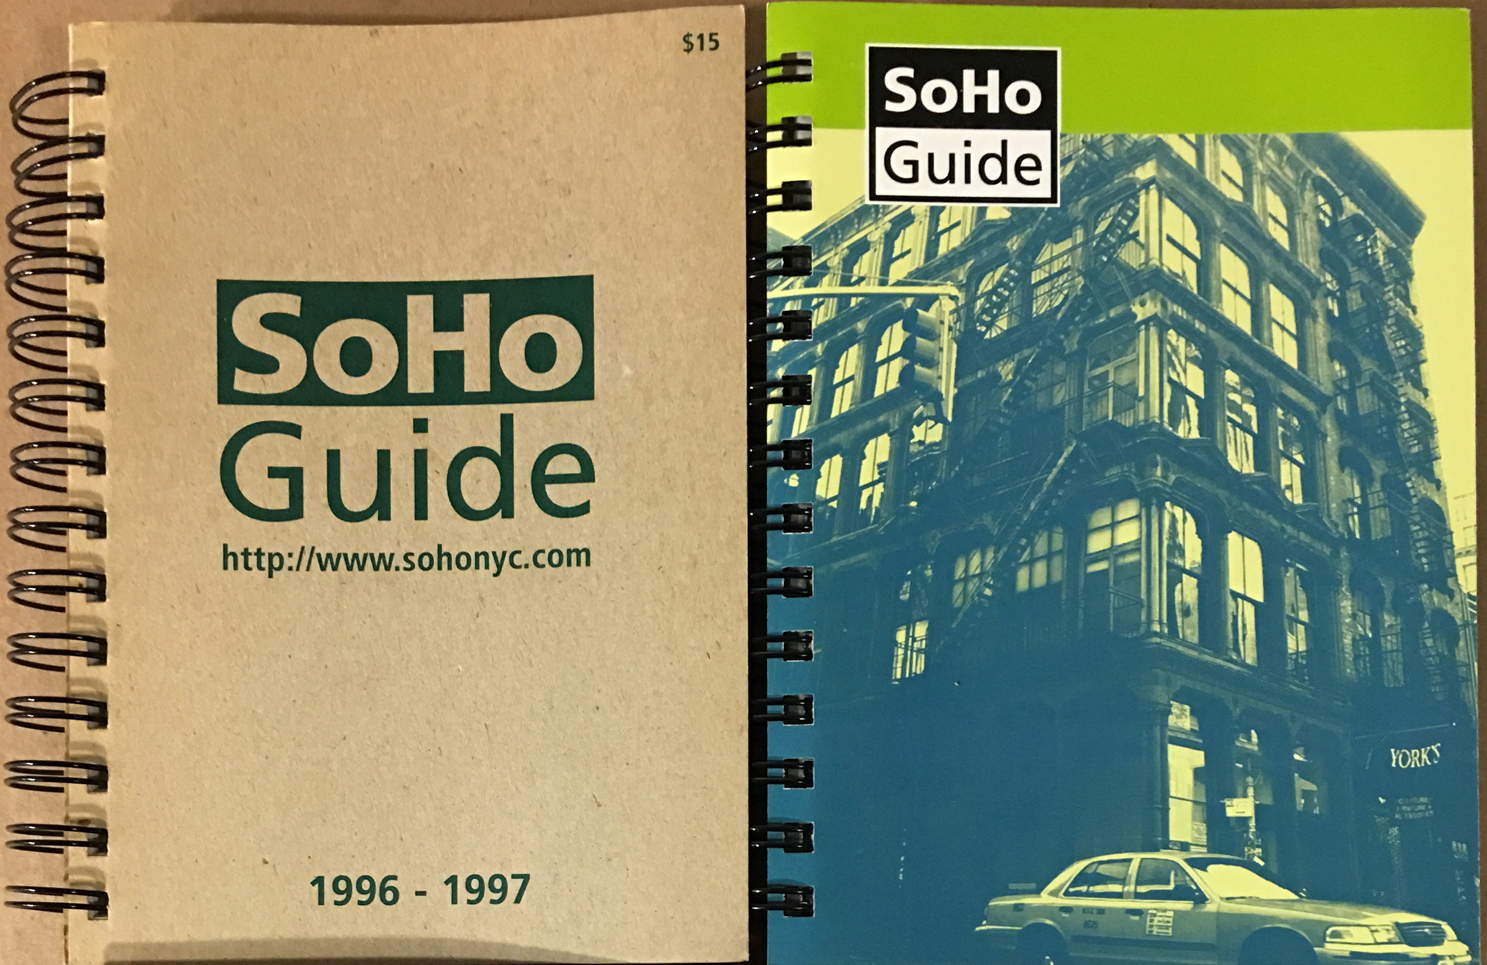 SoHo Guide